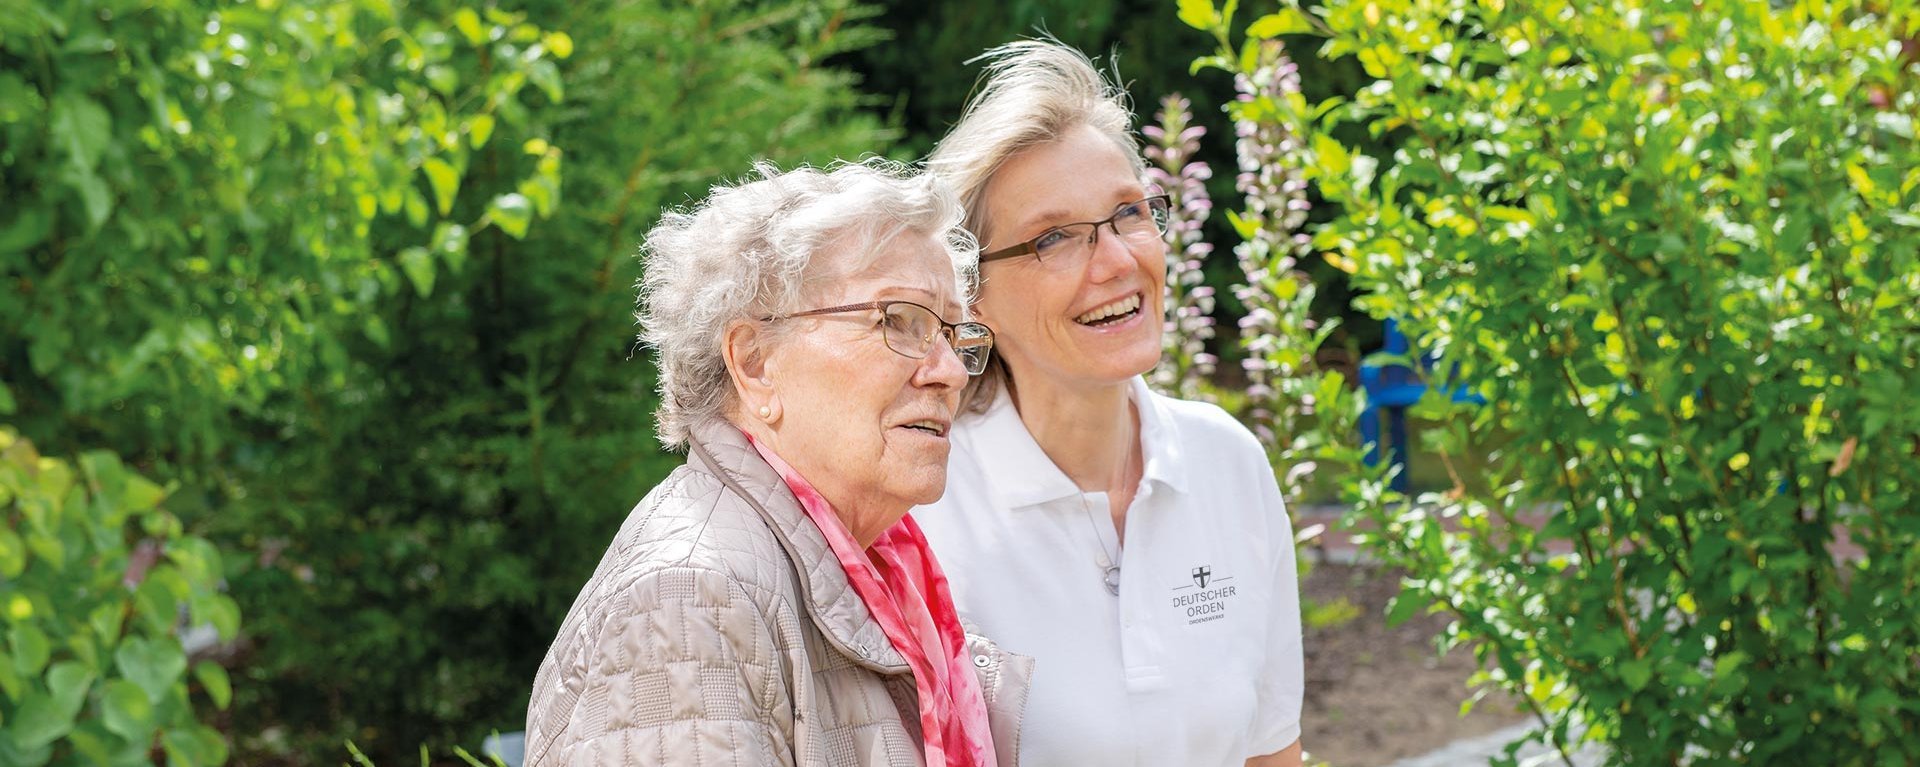 Eine Pflegerin zeigt einer Bewohnerin etwas im Garten (nicht sichtbar) - beide lächeln